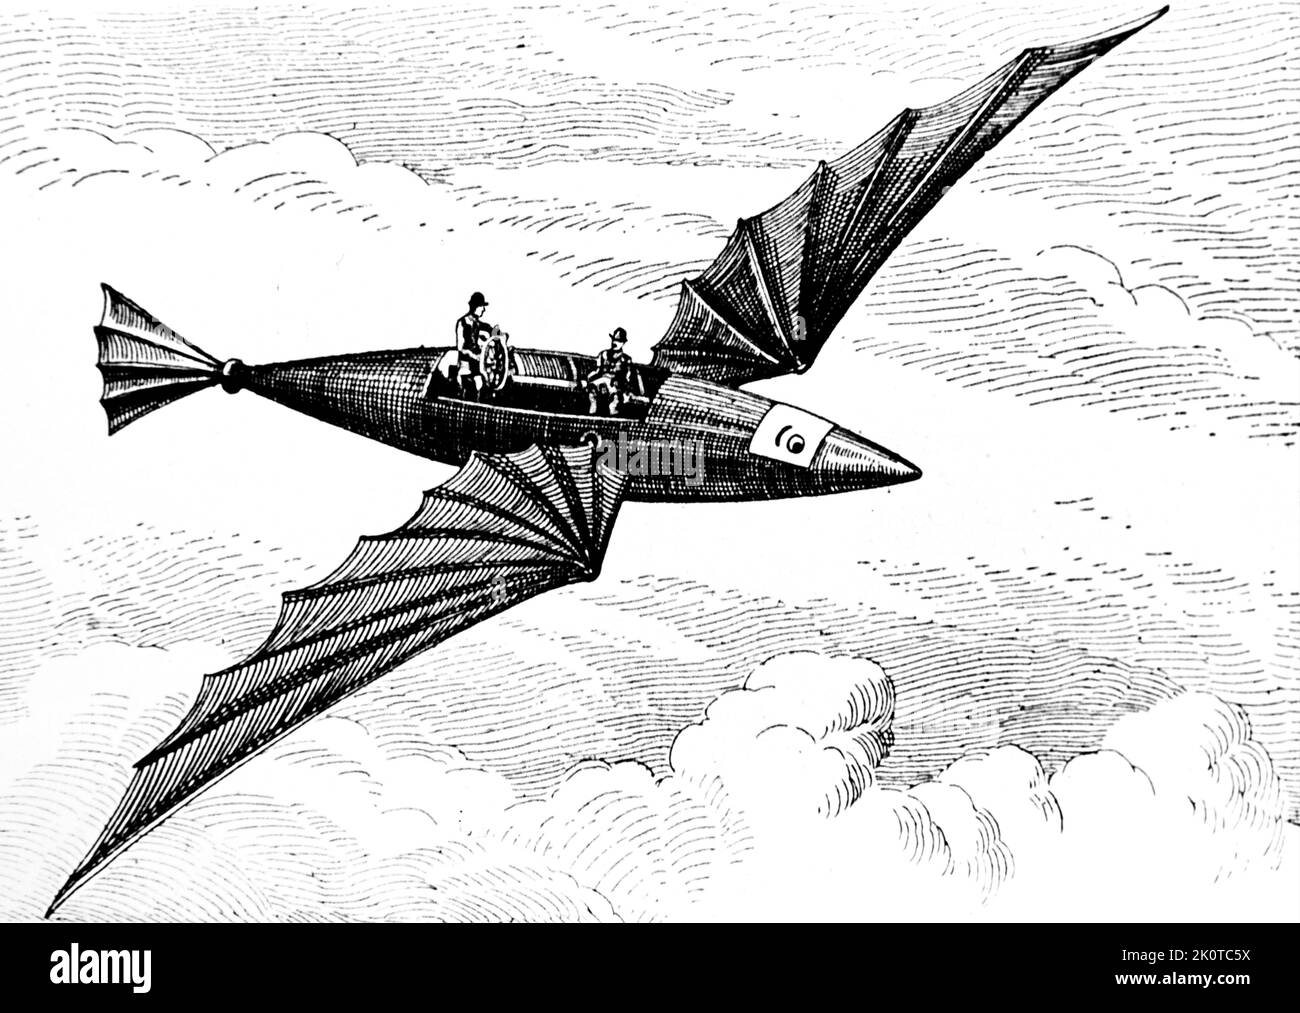 Der fliegende Fisch, eine Idee für den Flugverkehr in Amerika, 1880. Wird Thomas Edison zugeschrieben. Stockfoto